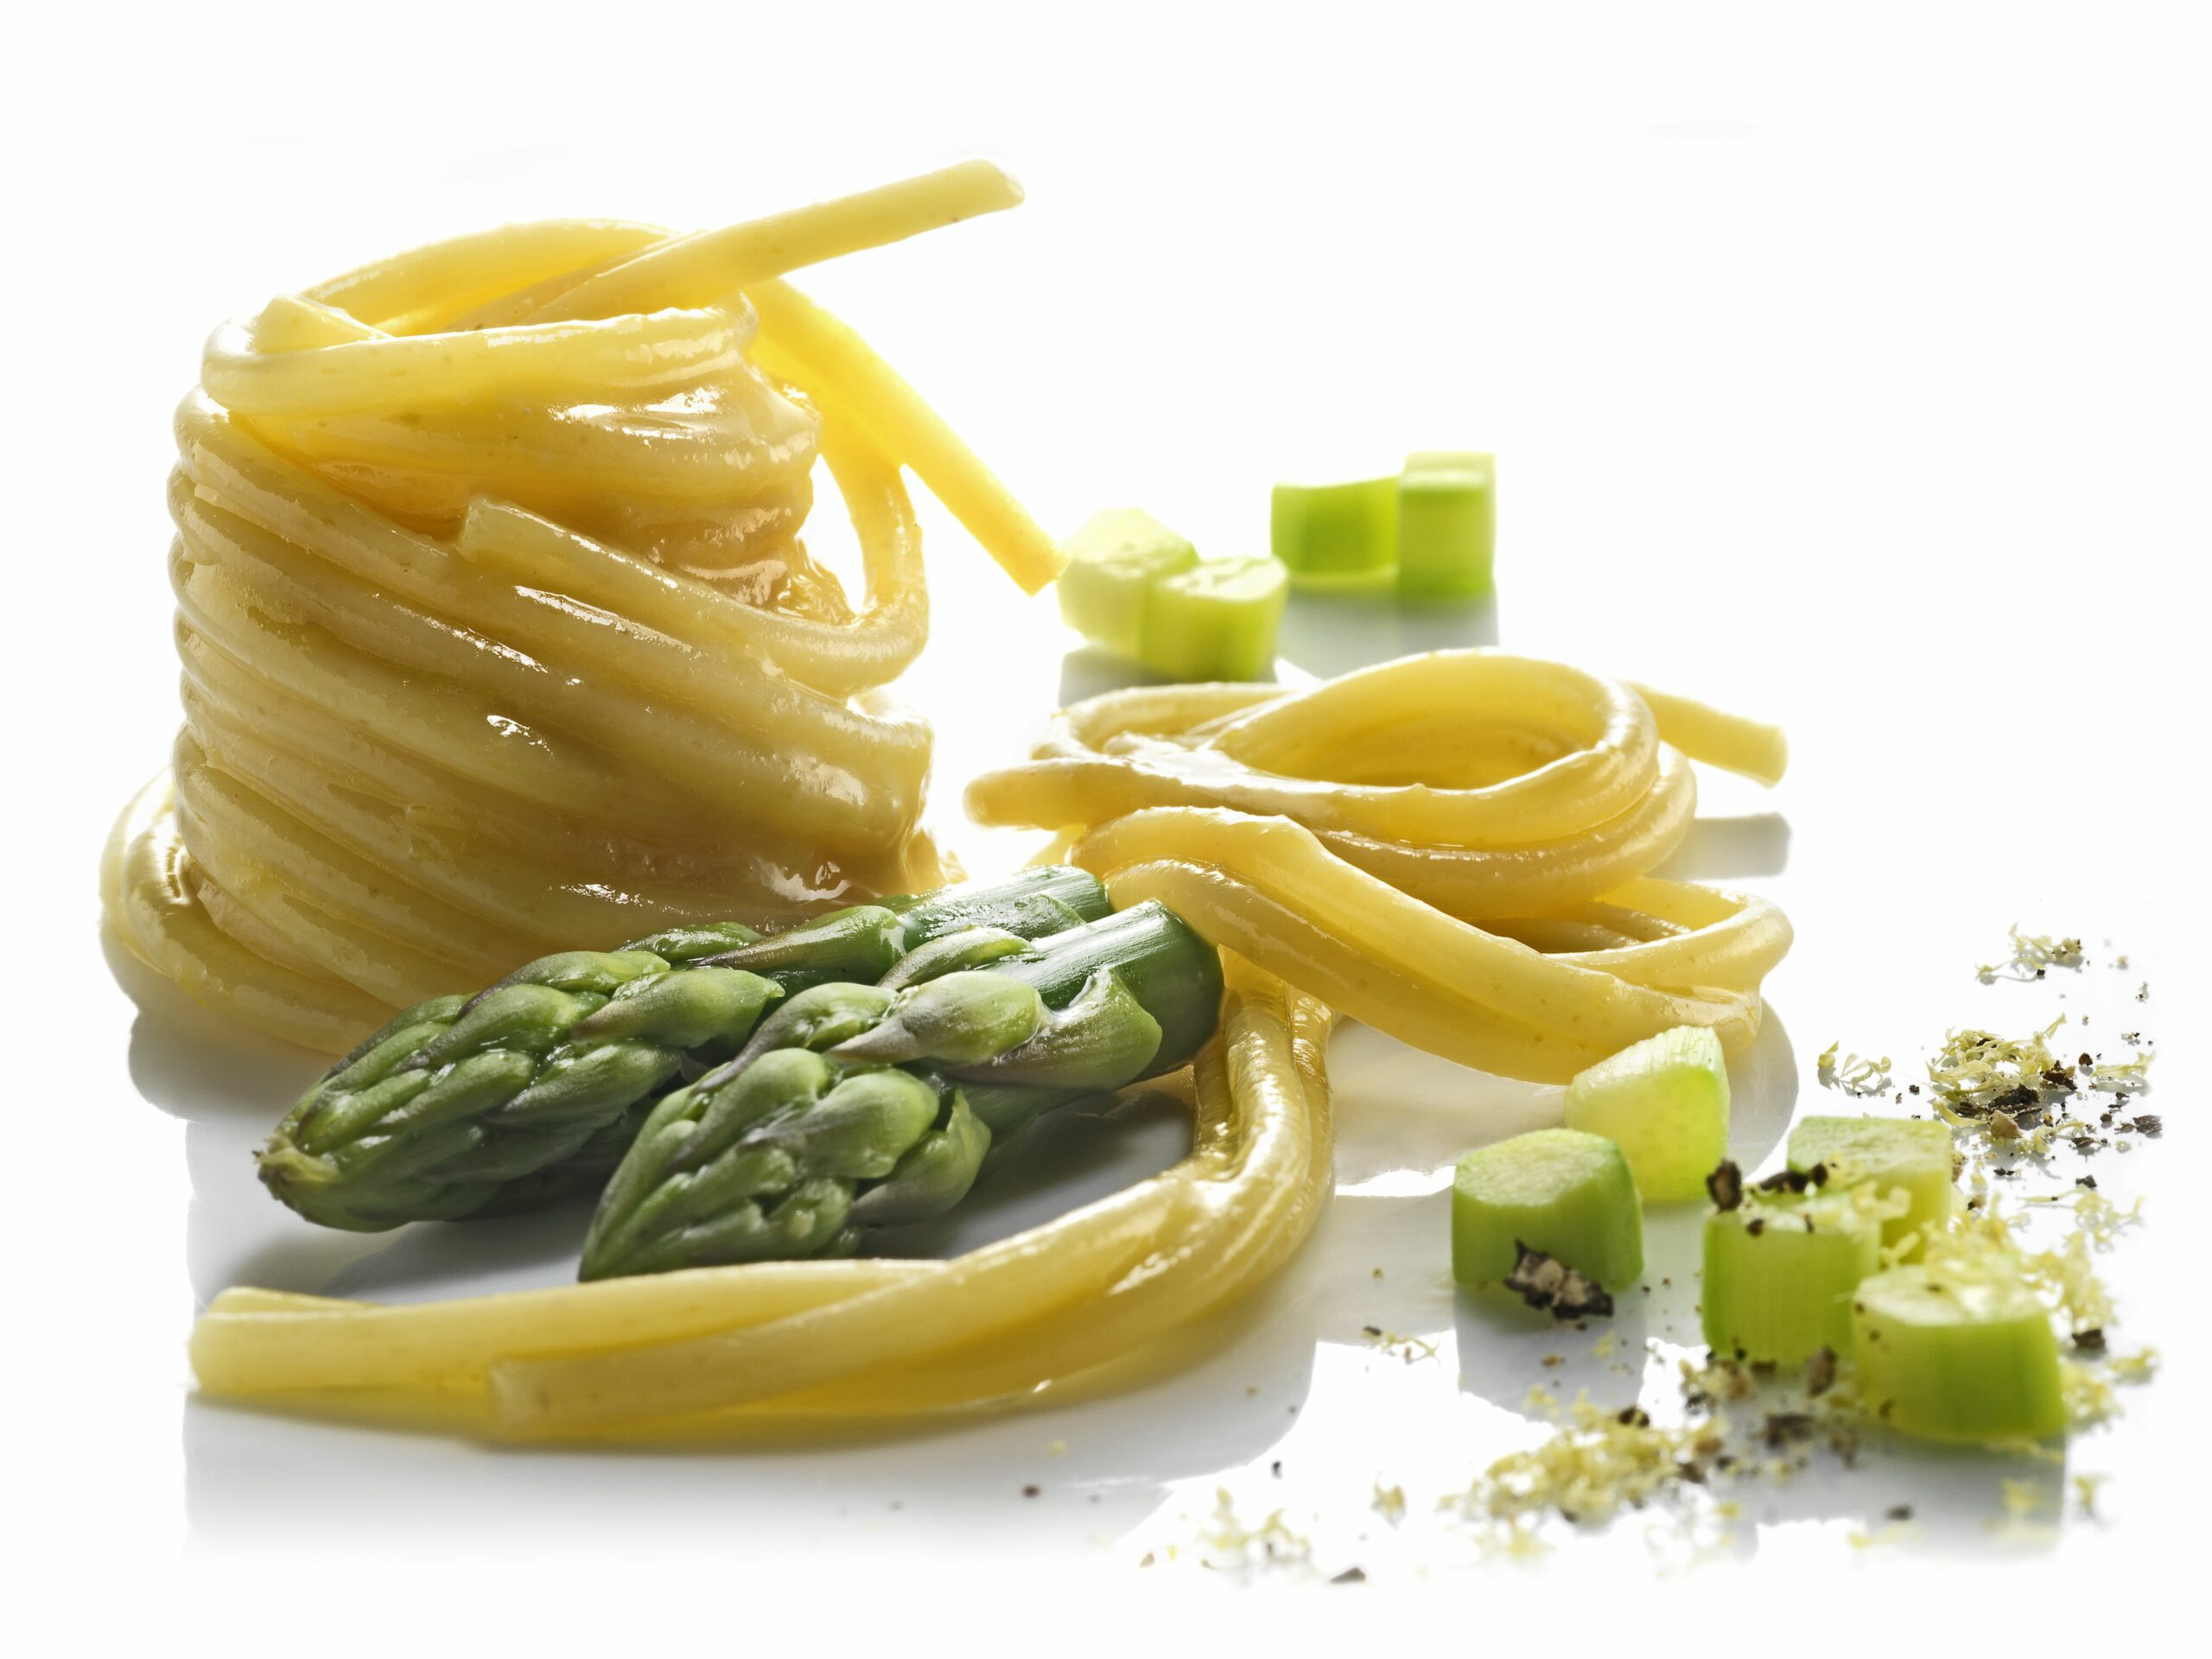 Spaghetti n°12 con uova e asparagi al profumo di limone